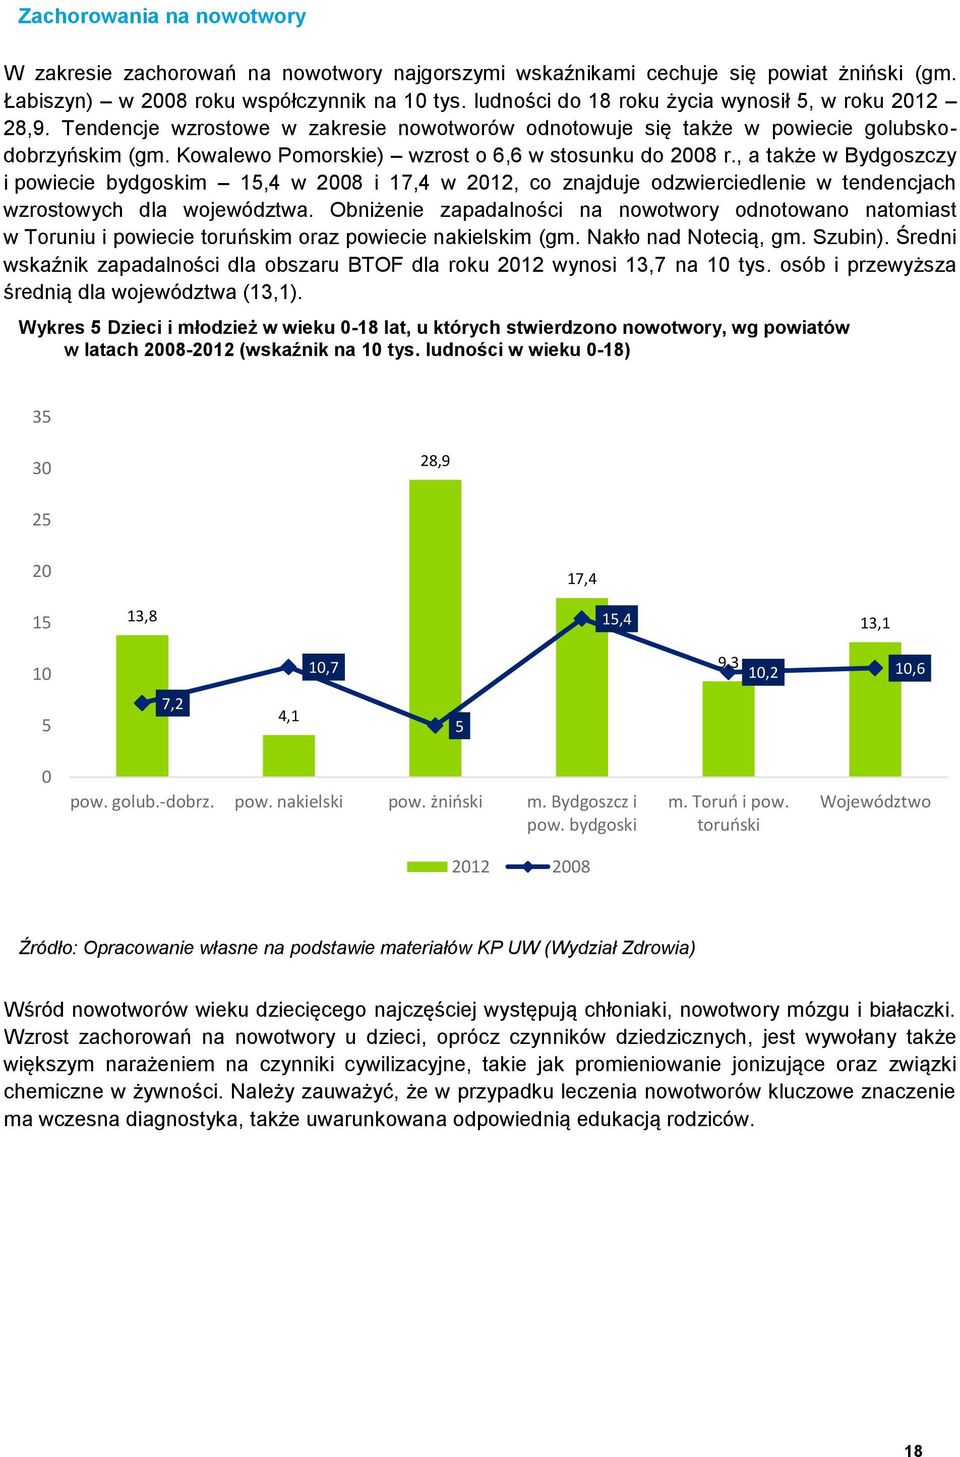 Kowalewo Pomorskie) wzrost o 6,6 w stosunku do 2008 r., a także w Bydgoszczy i powiecie bydgoskim 15,4 w 2008 i 17,4 w 2012, co znajduje odzwierciedlenie w tendencjach wzrostowych dla województwa.